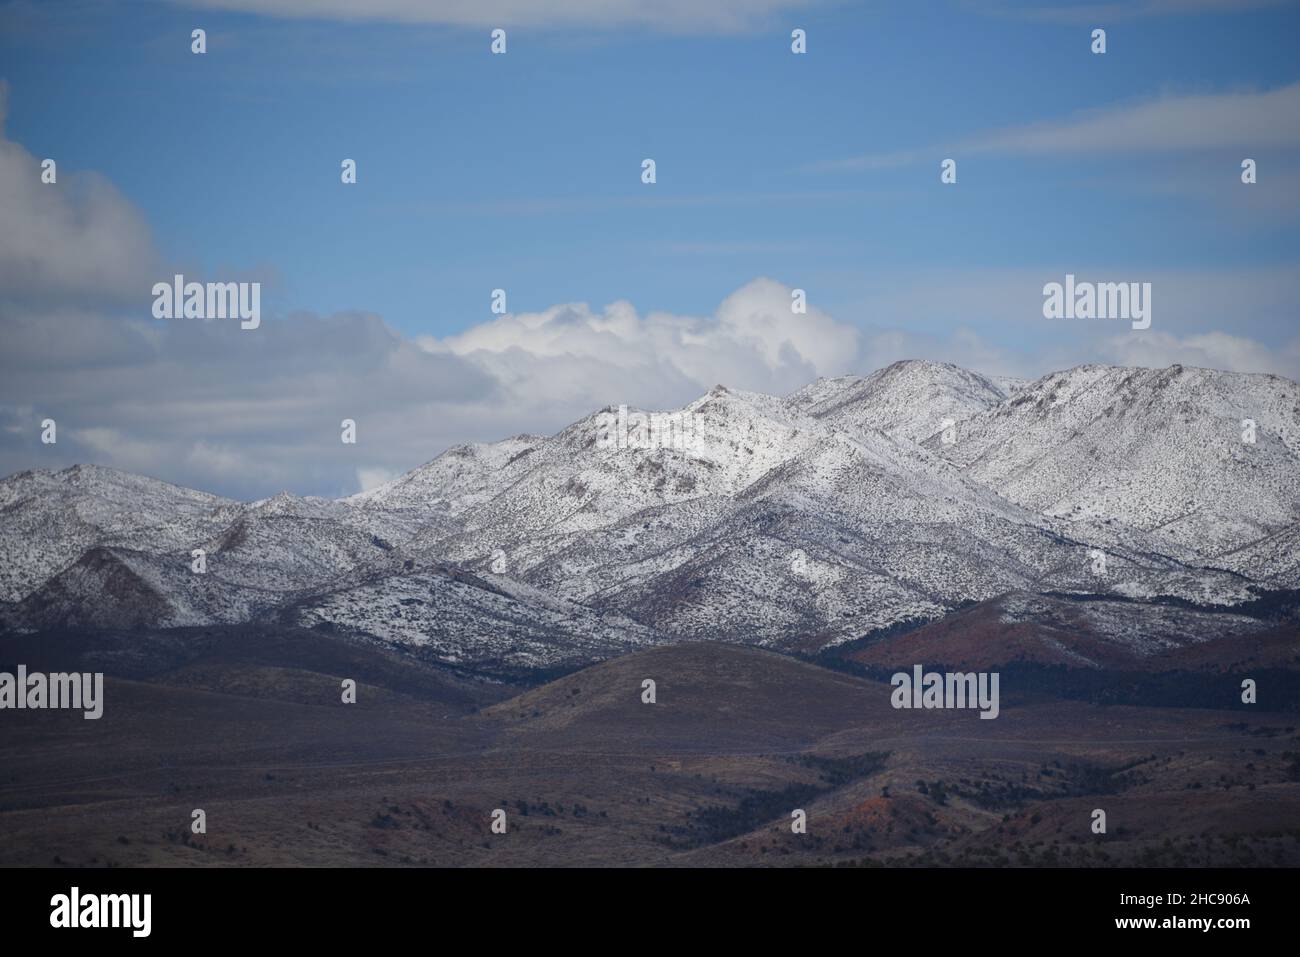 Paisaje panorámico de gran formato de la cordillera montañosa cubierta de nieve del desierto rojo en la naturaleza salvaje del sur de Utah, EE.UU. Foto de stock